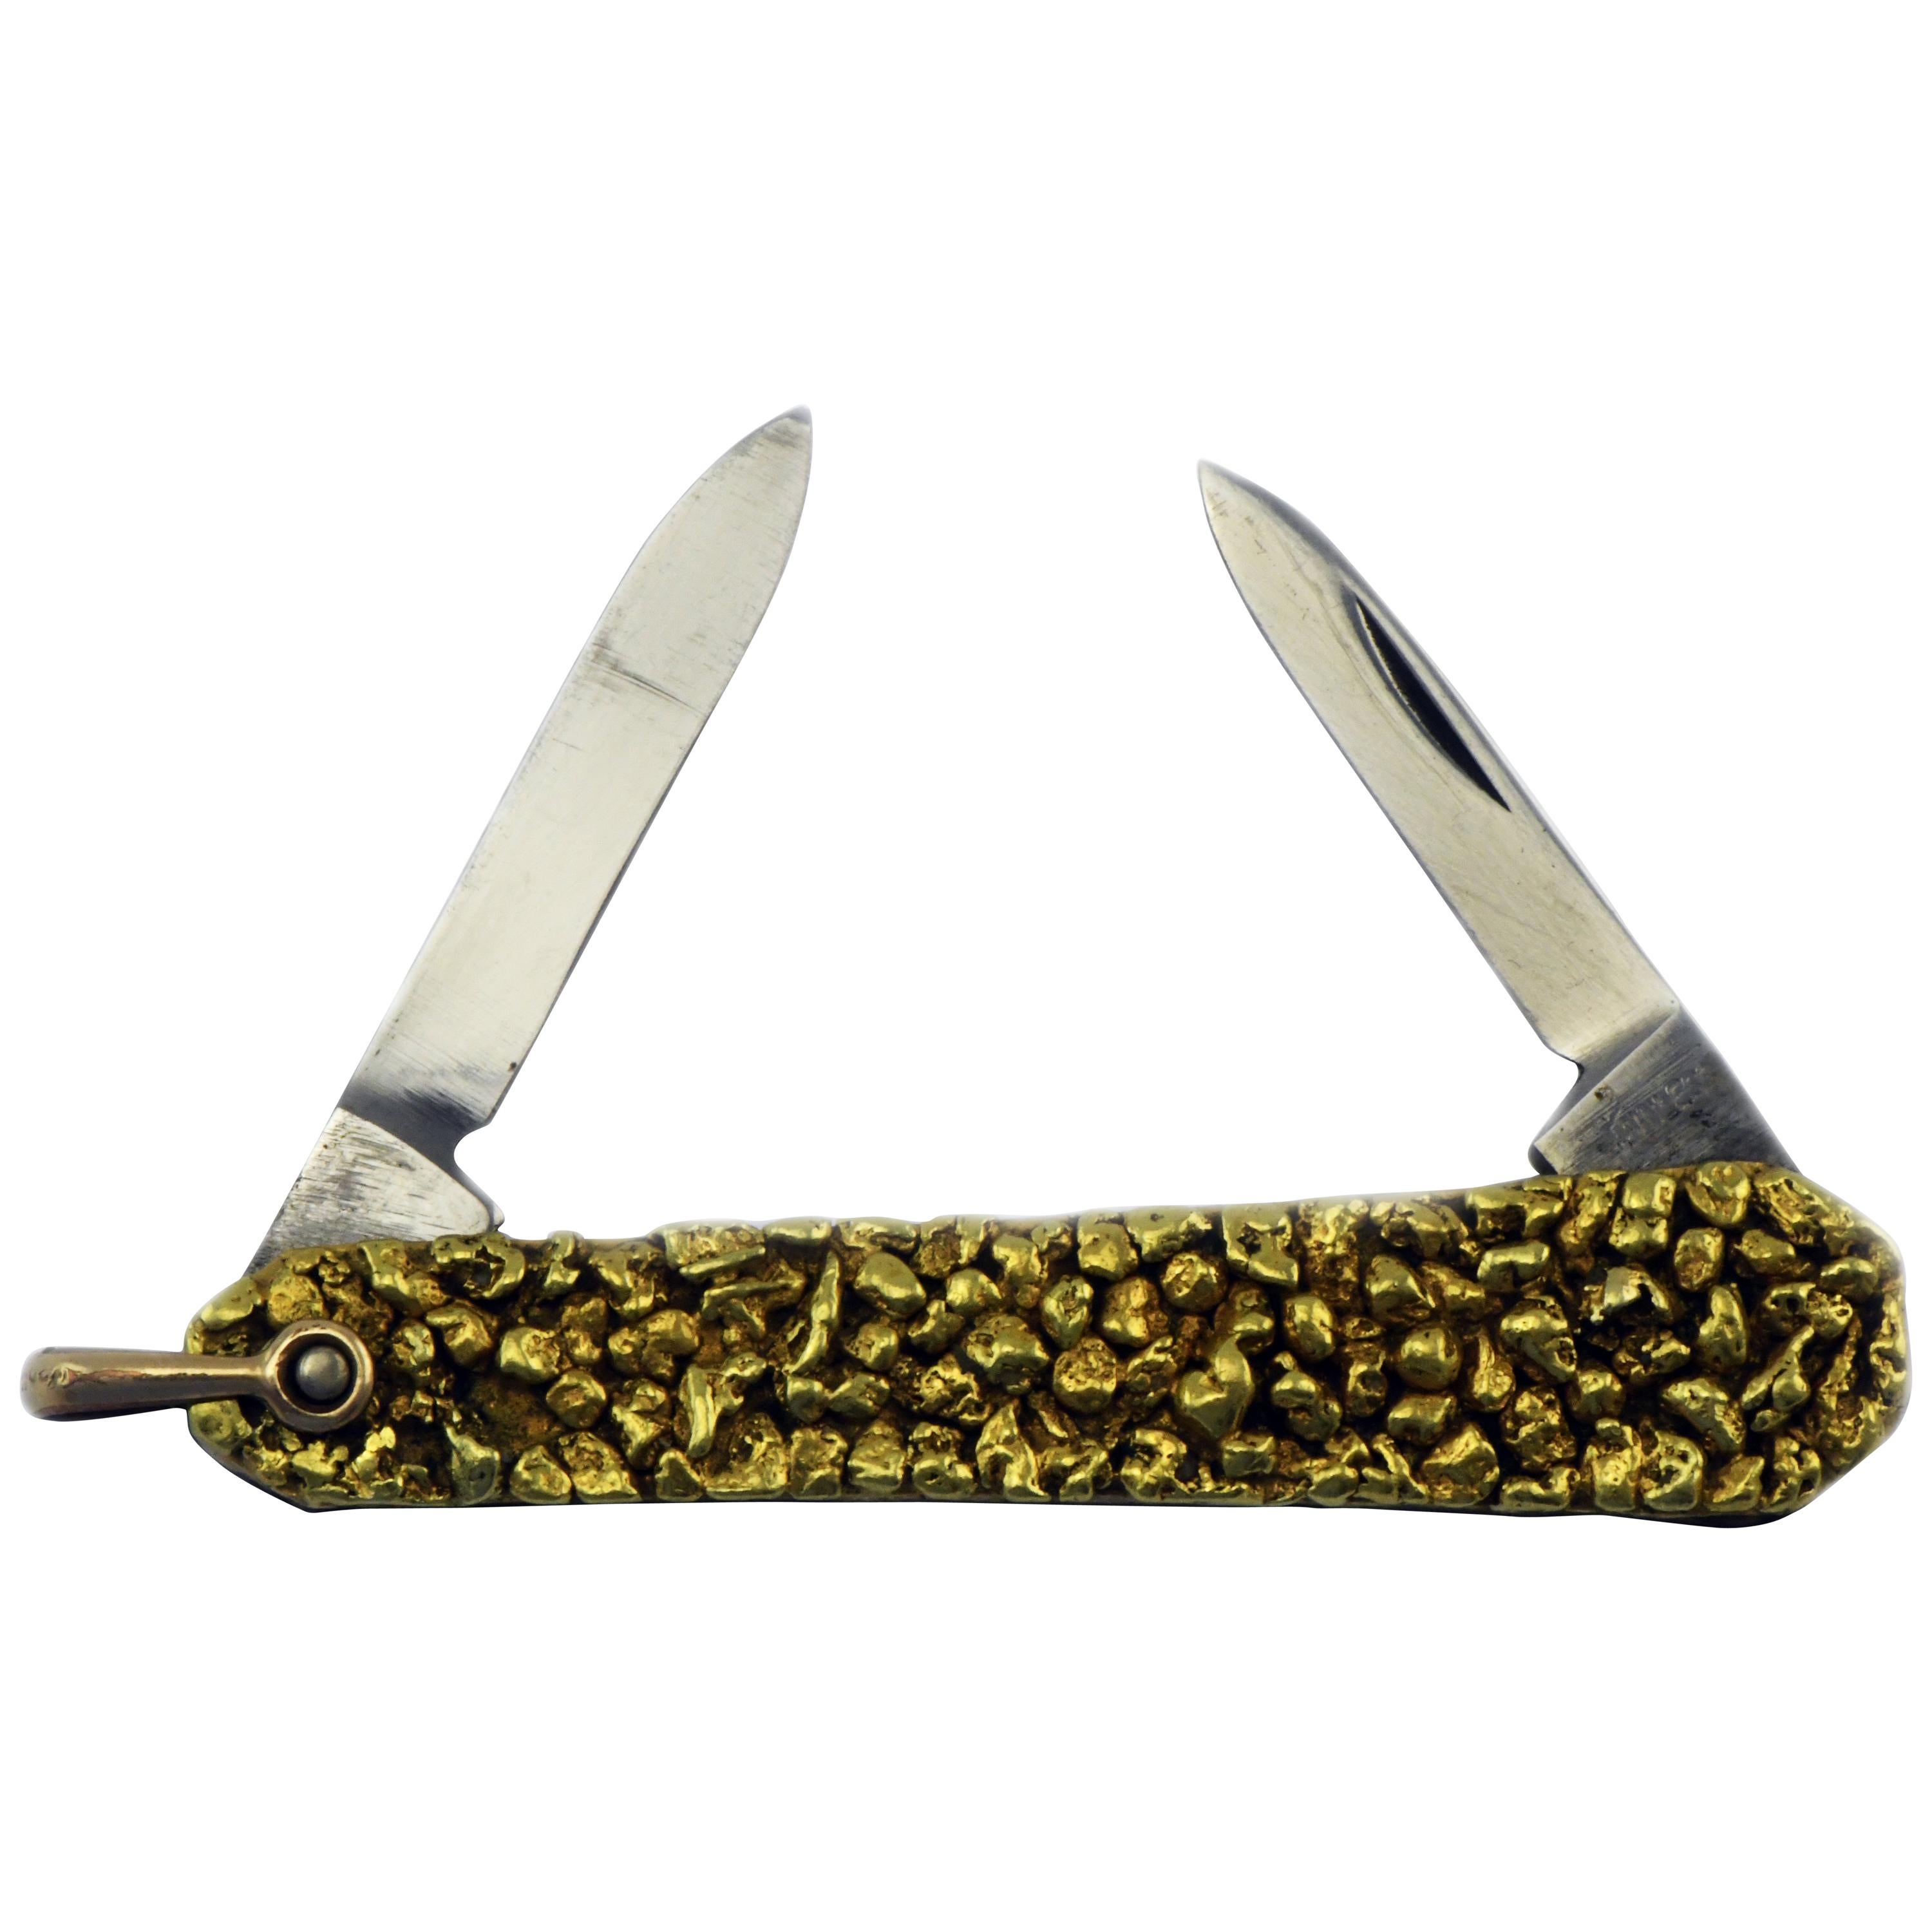 22 Karat Gold Alaskan Nugget Cluster on Swank Double Blade Folding Pocket Knife For Sale